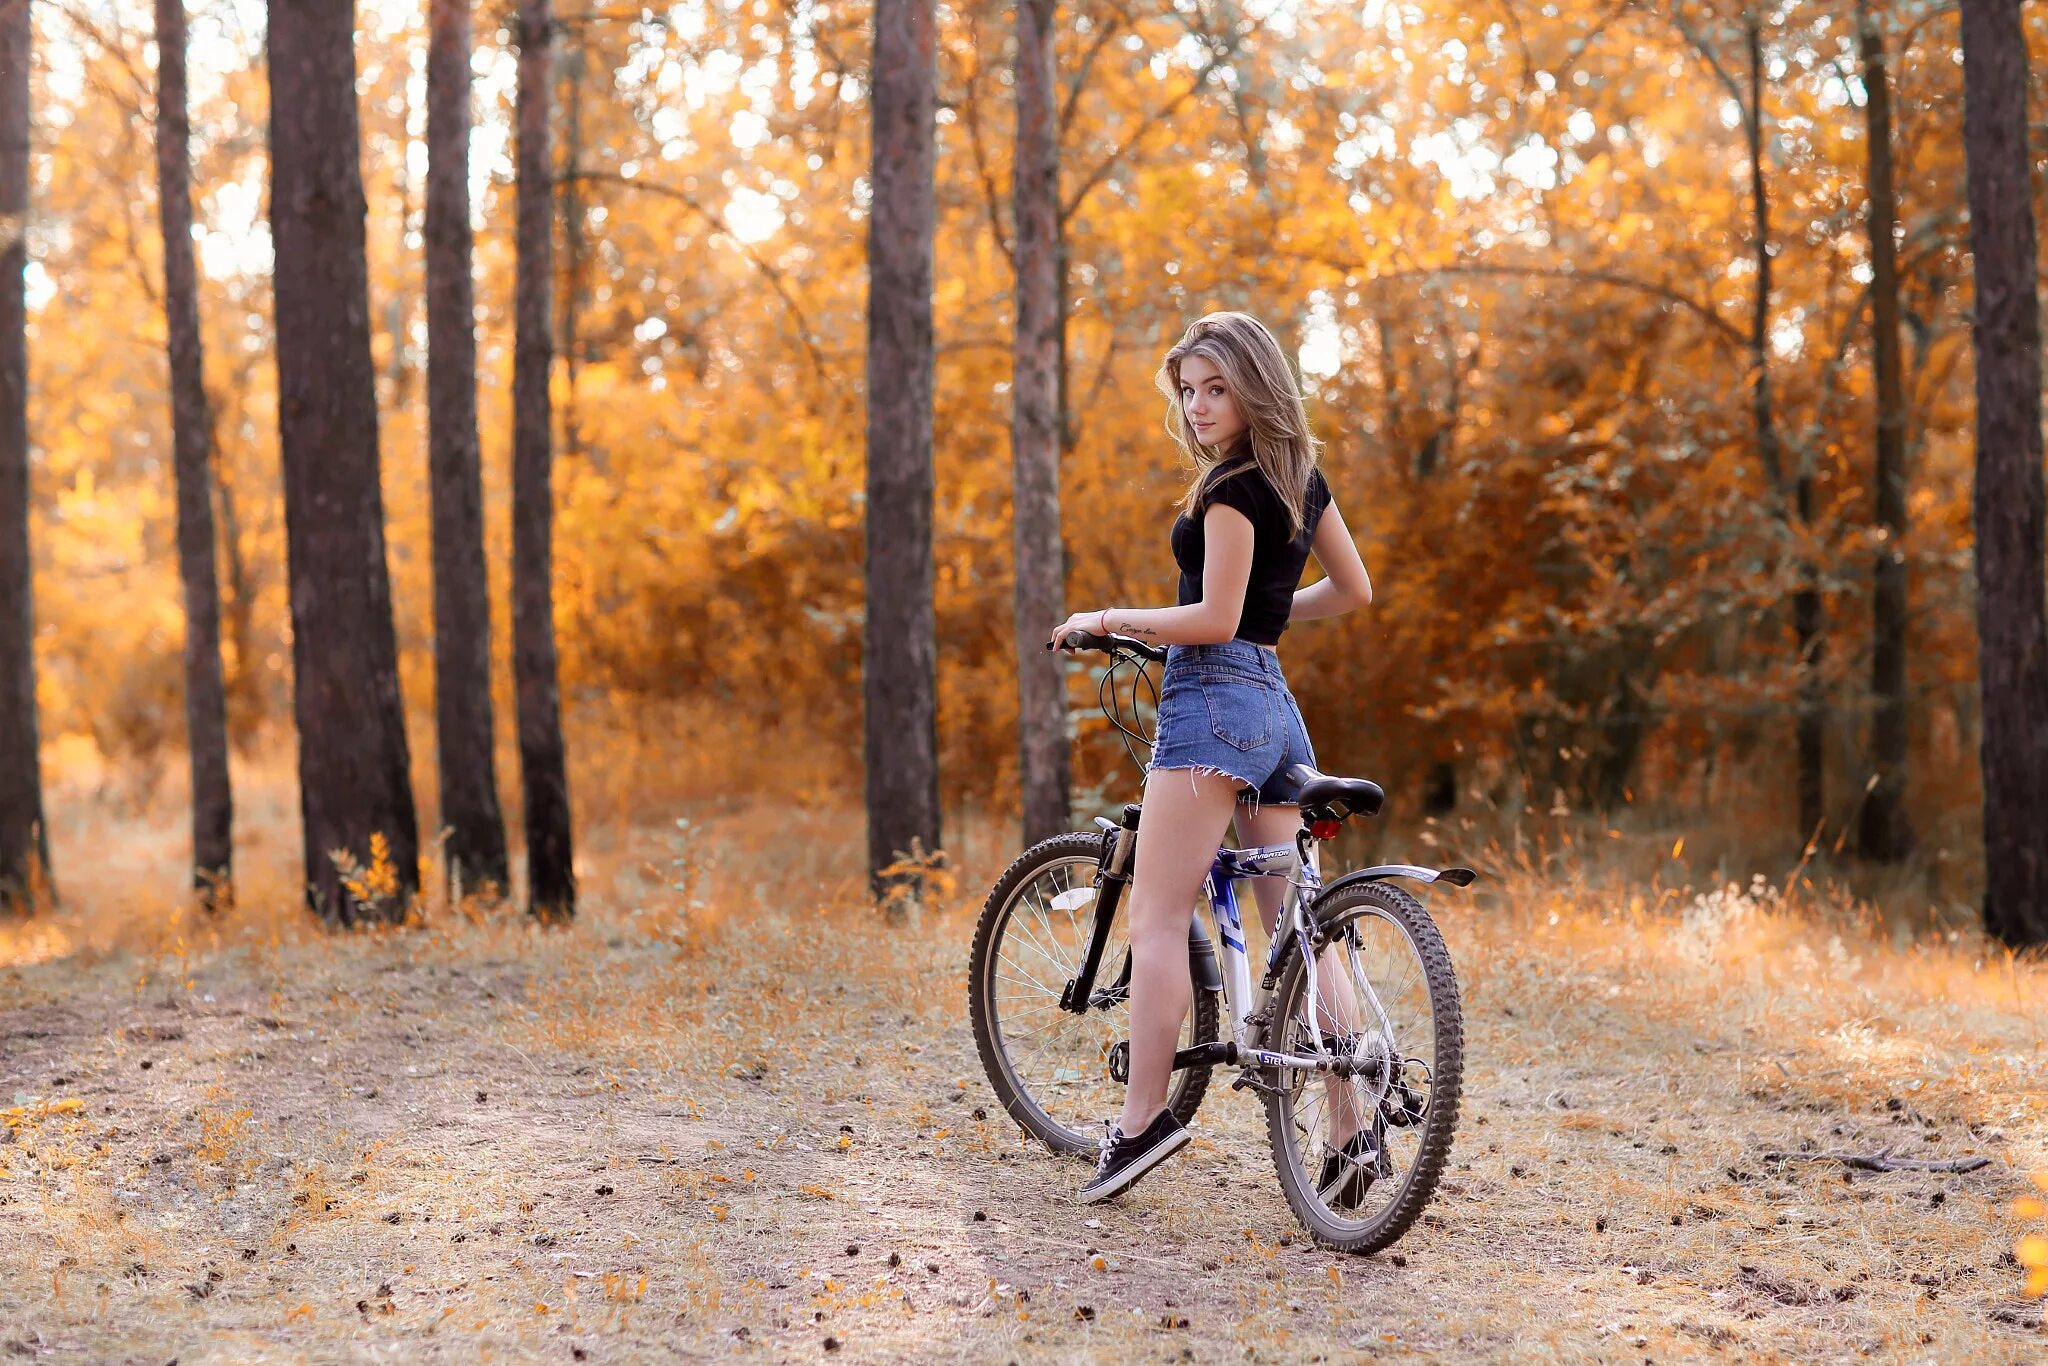 Short video girls. Девушка на велосипеде. Красивые девушки на велосипеде. Фотосессия с велосипедом. Девушка на велосипеде в лесу.